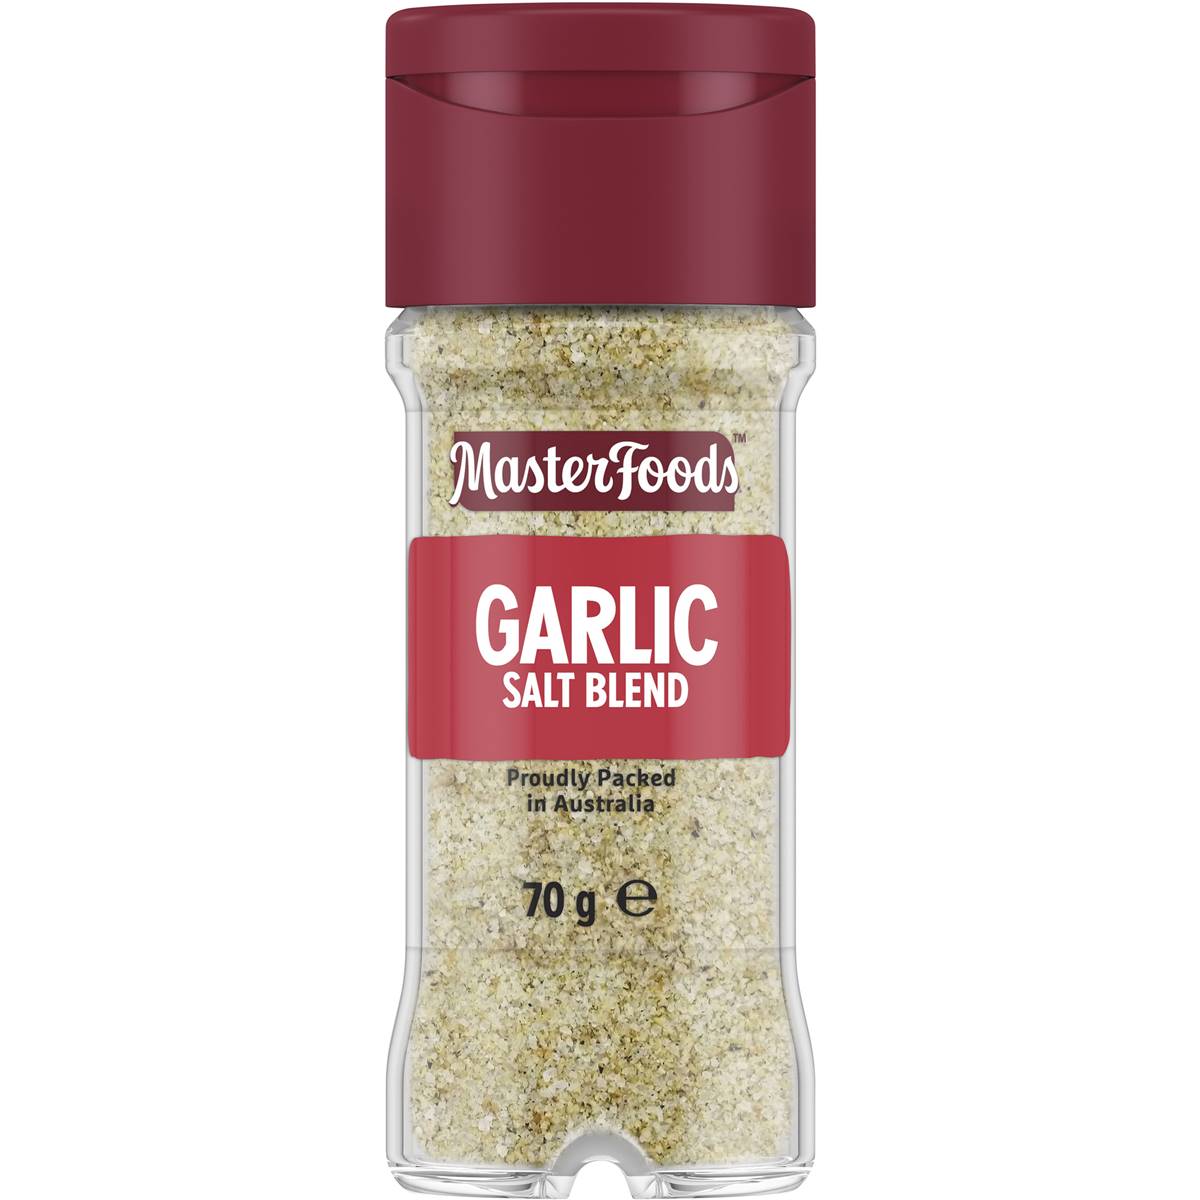 Masterfoods Garlic Salt